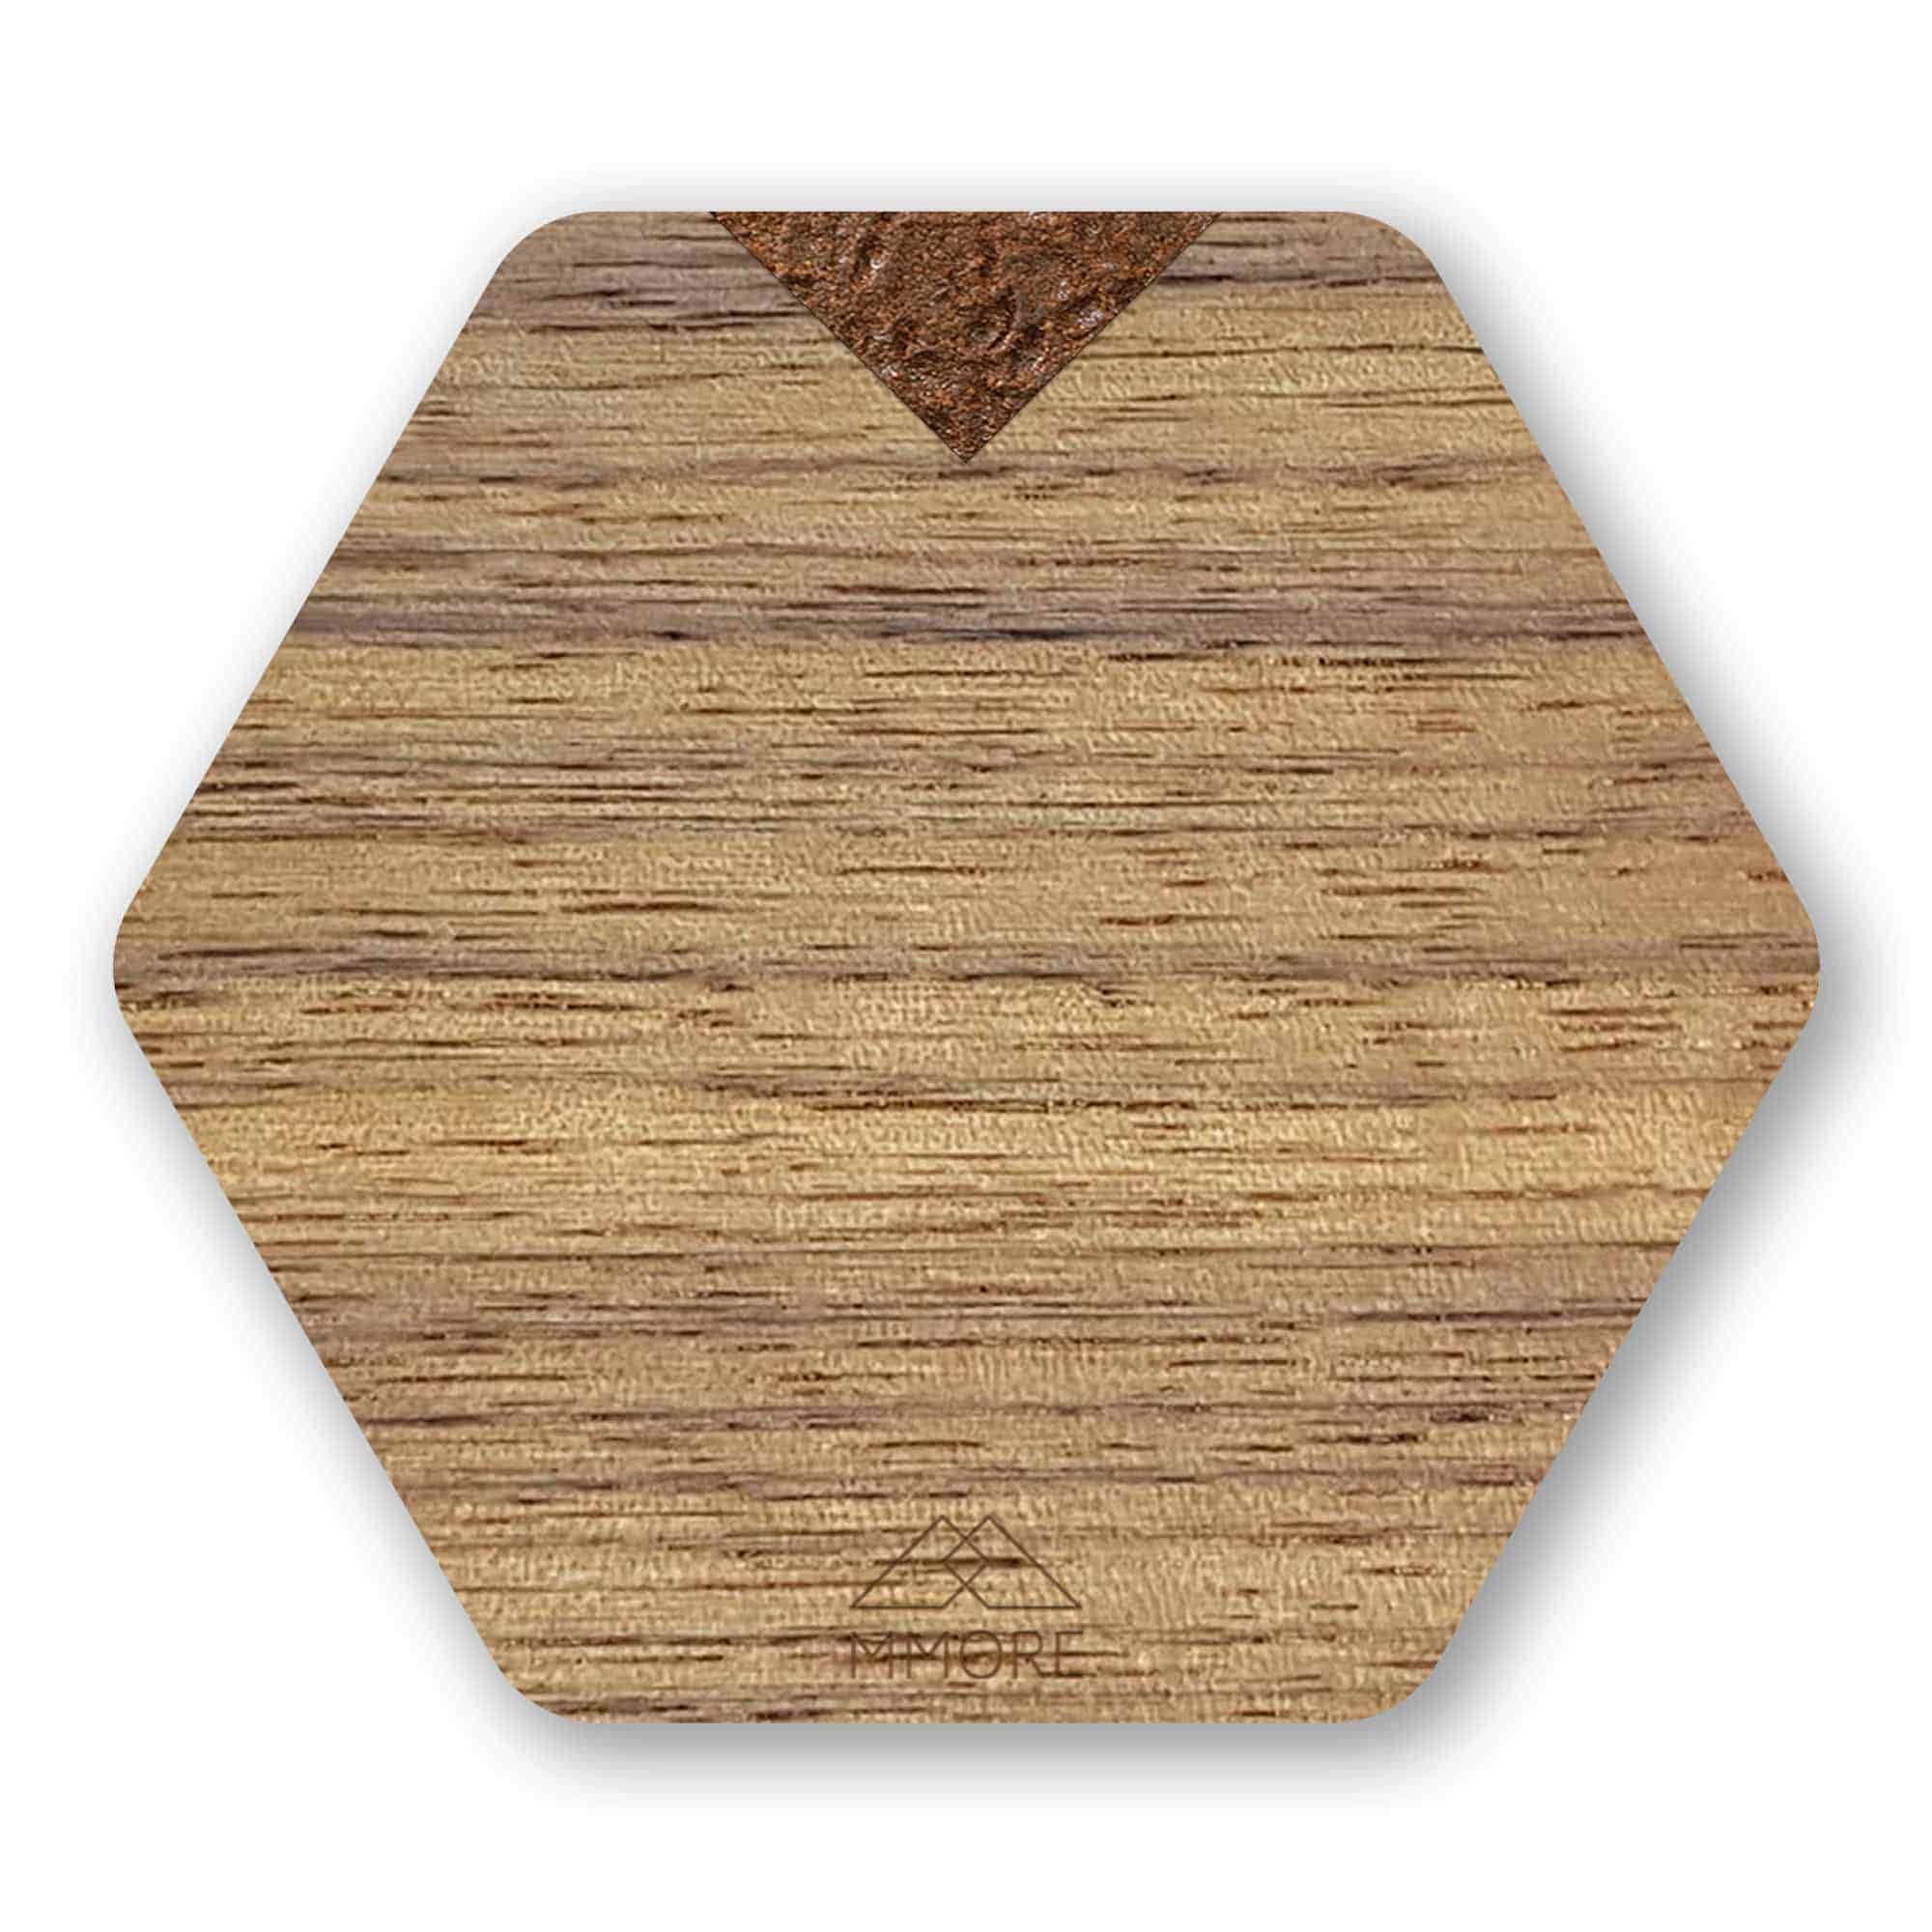 Posavasos de madera individual - Nogal americano